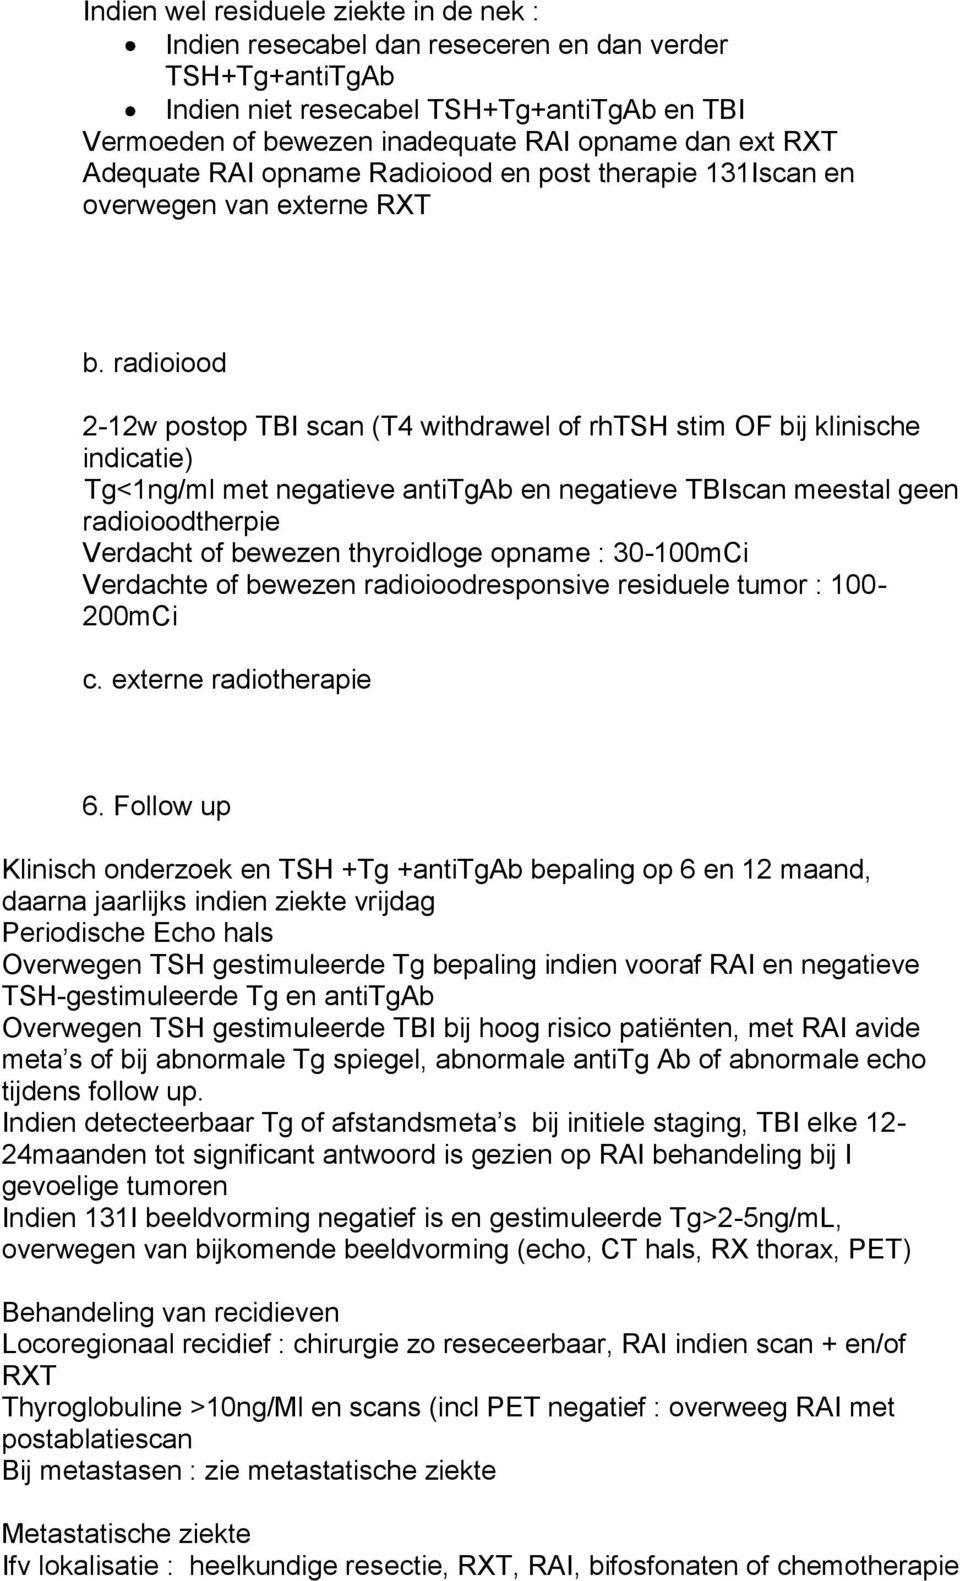 radioiood 2-12w postop TBI scan (T4 withdrawel of rhtsh stim OF bij klinische indicatie) Tg<1ng/ml met negatieve antitgab en negatieve TBIscan meestal geen radioioodtherpie Verdacht of bewezen